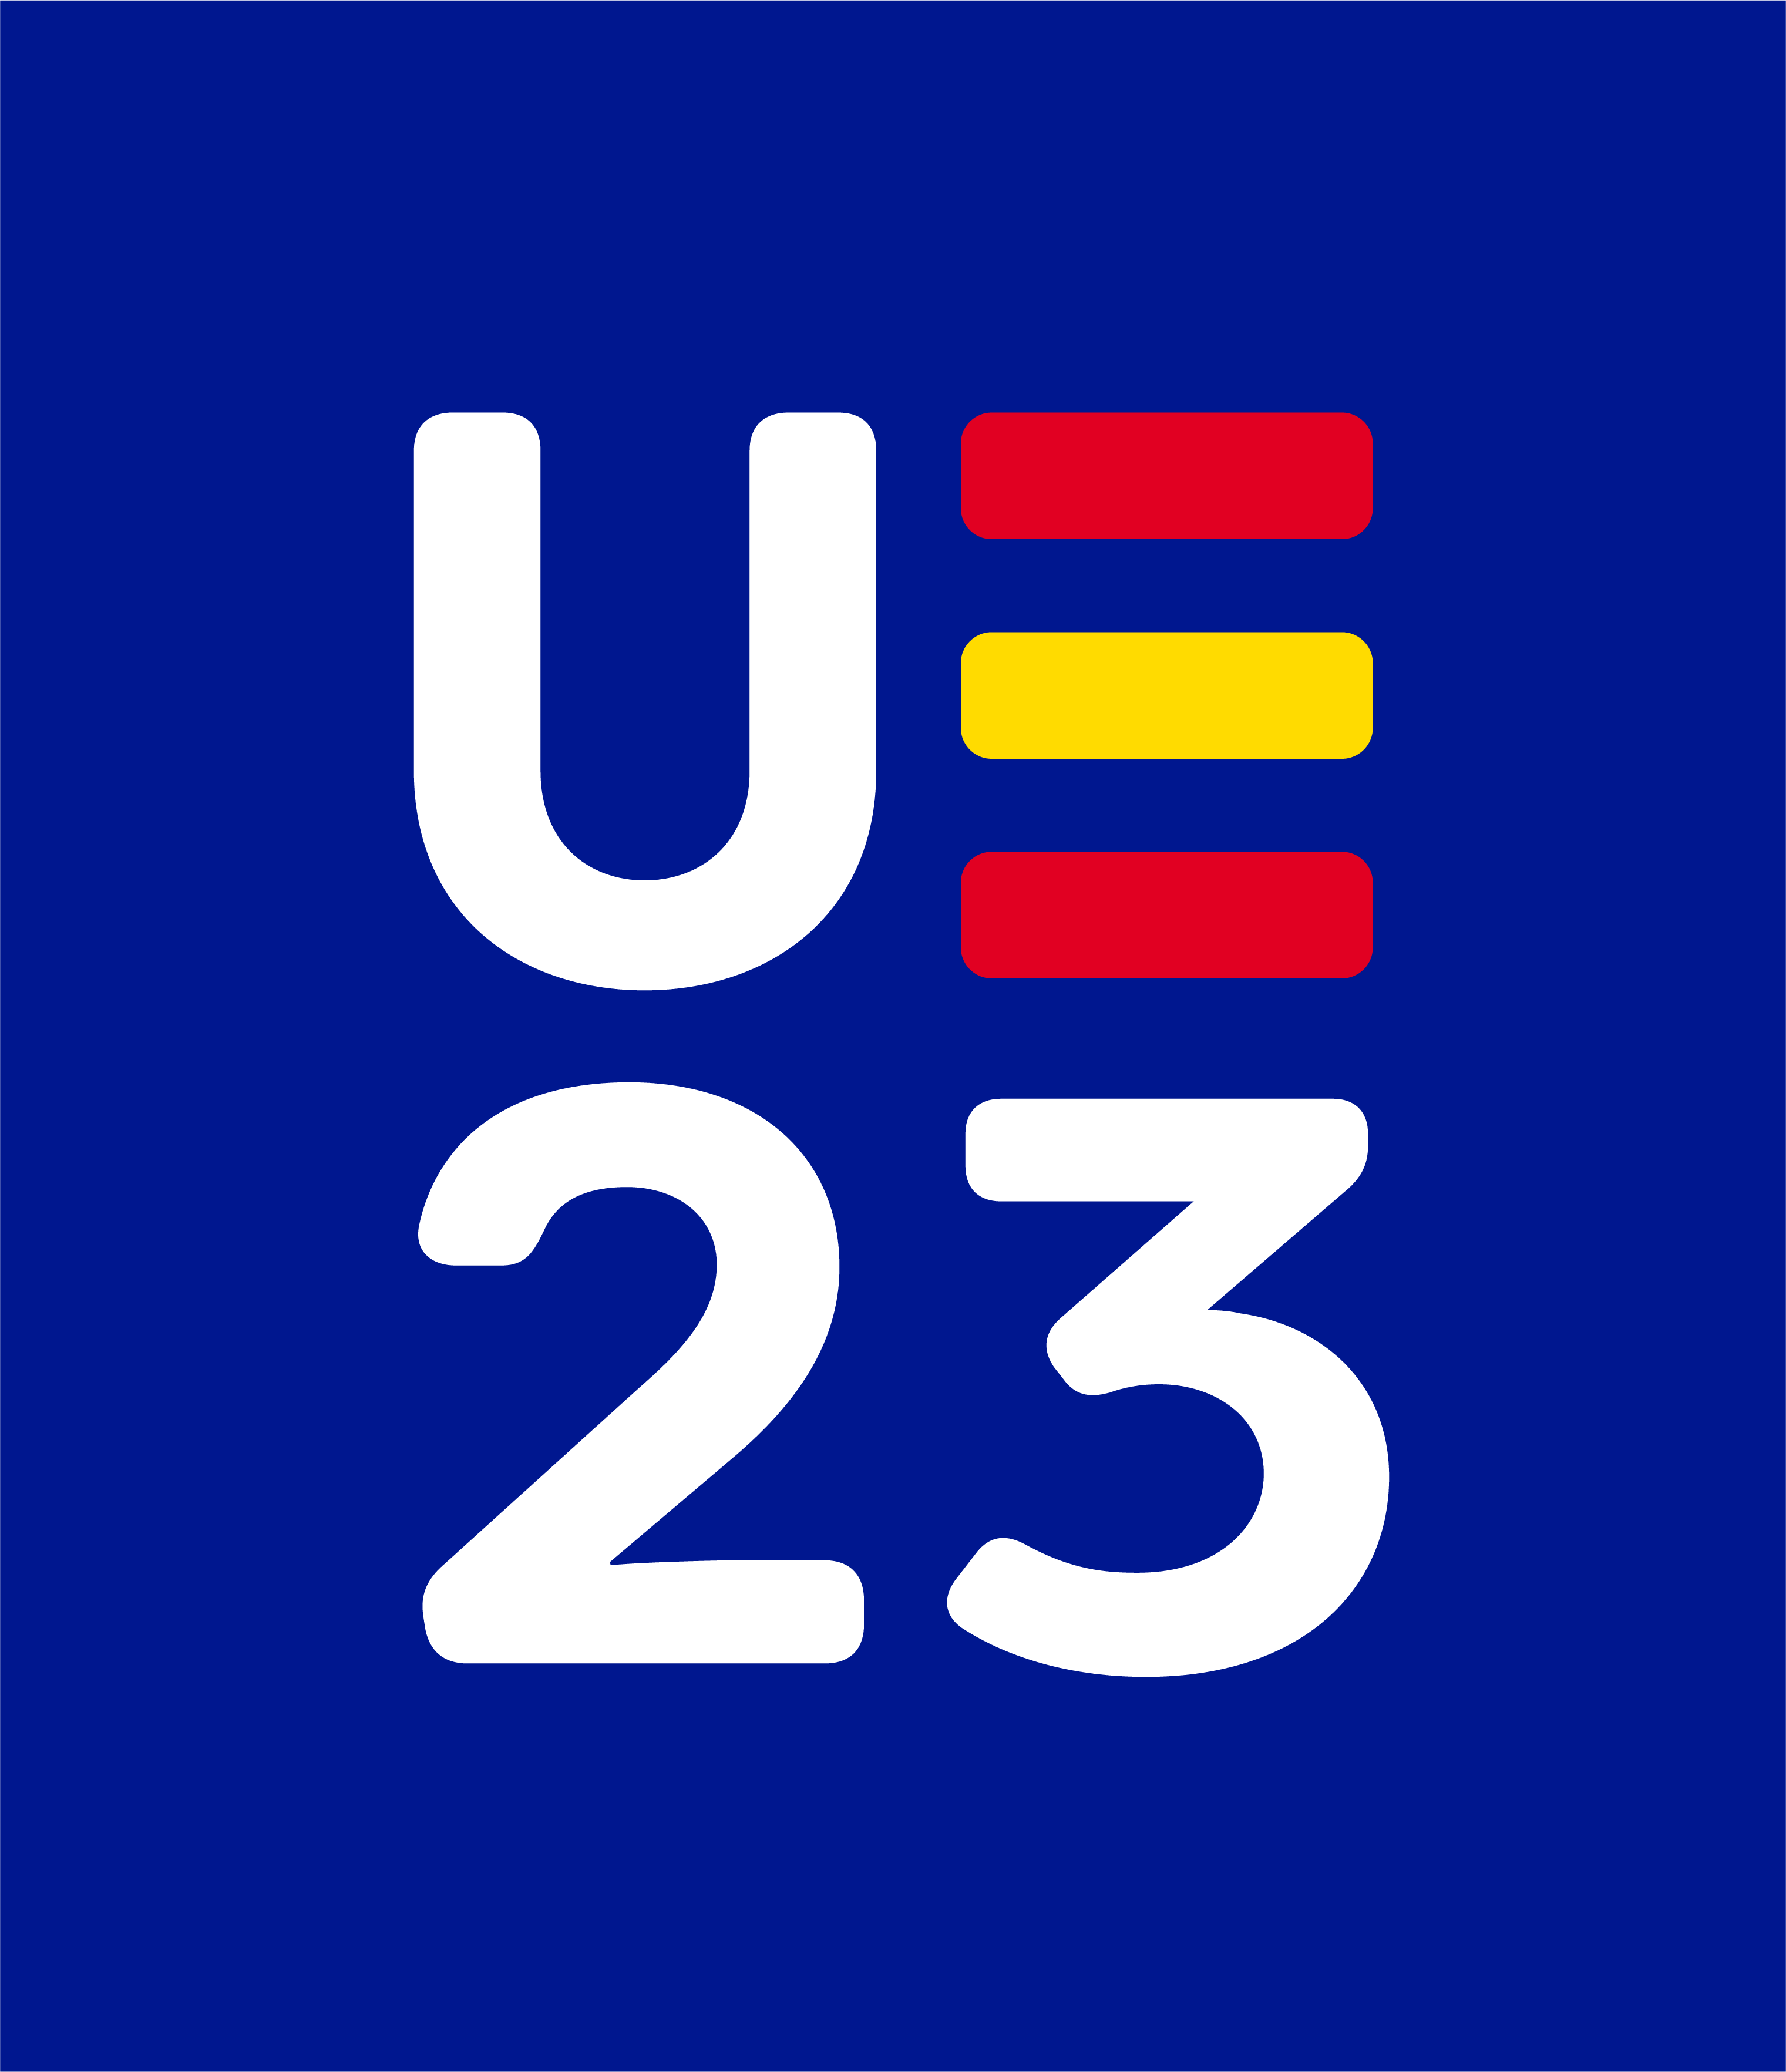 logo UE 23